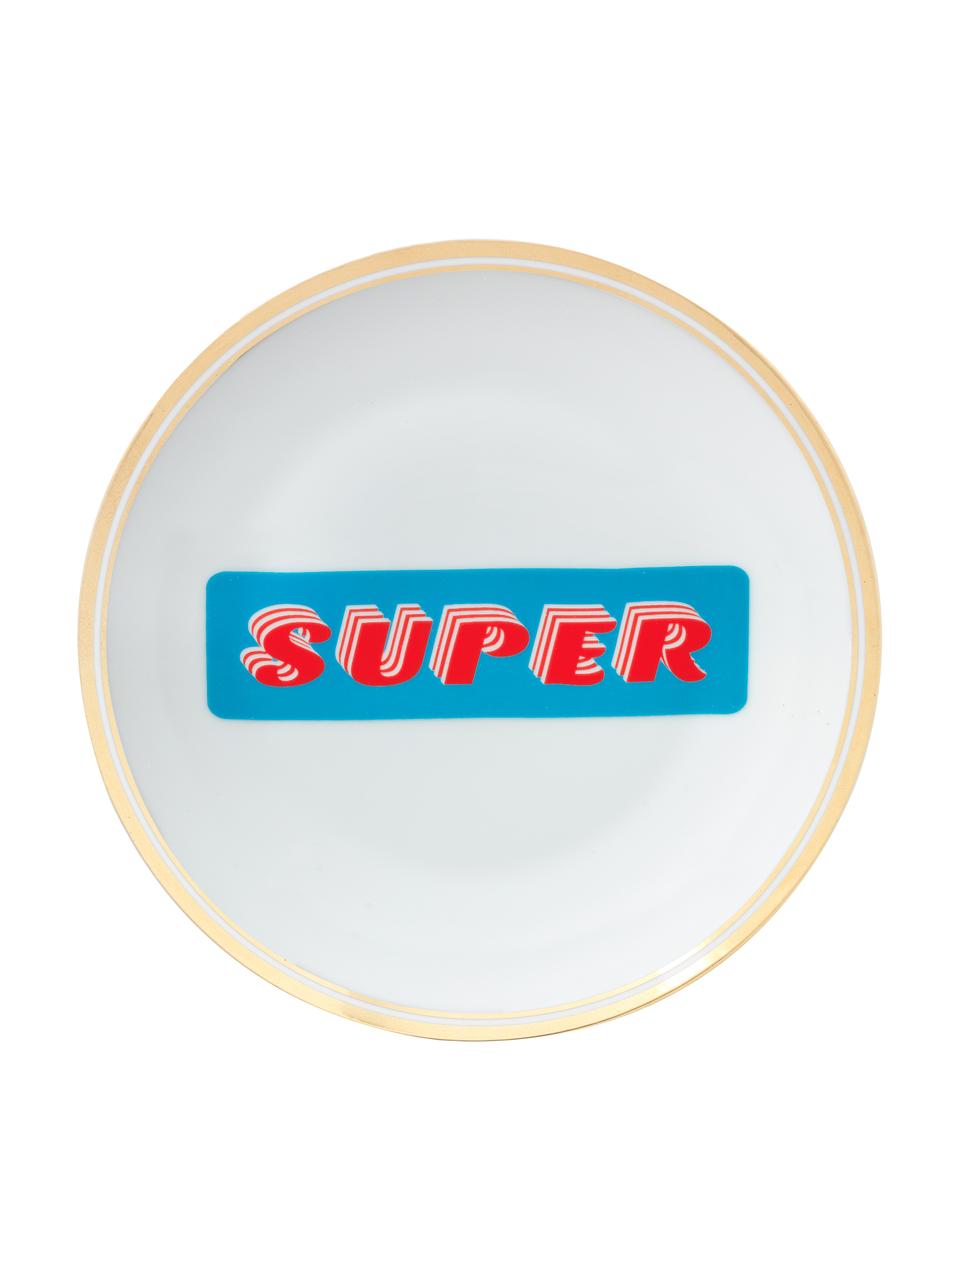 Porseleinen ontbijtbord Super met opschrift, Porselein, Super, Ø 17 cm